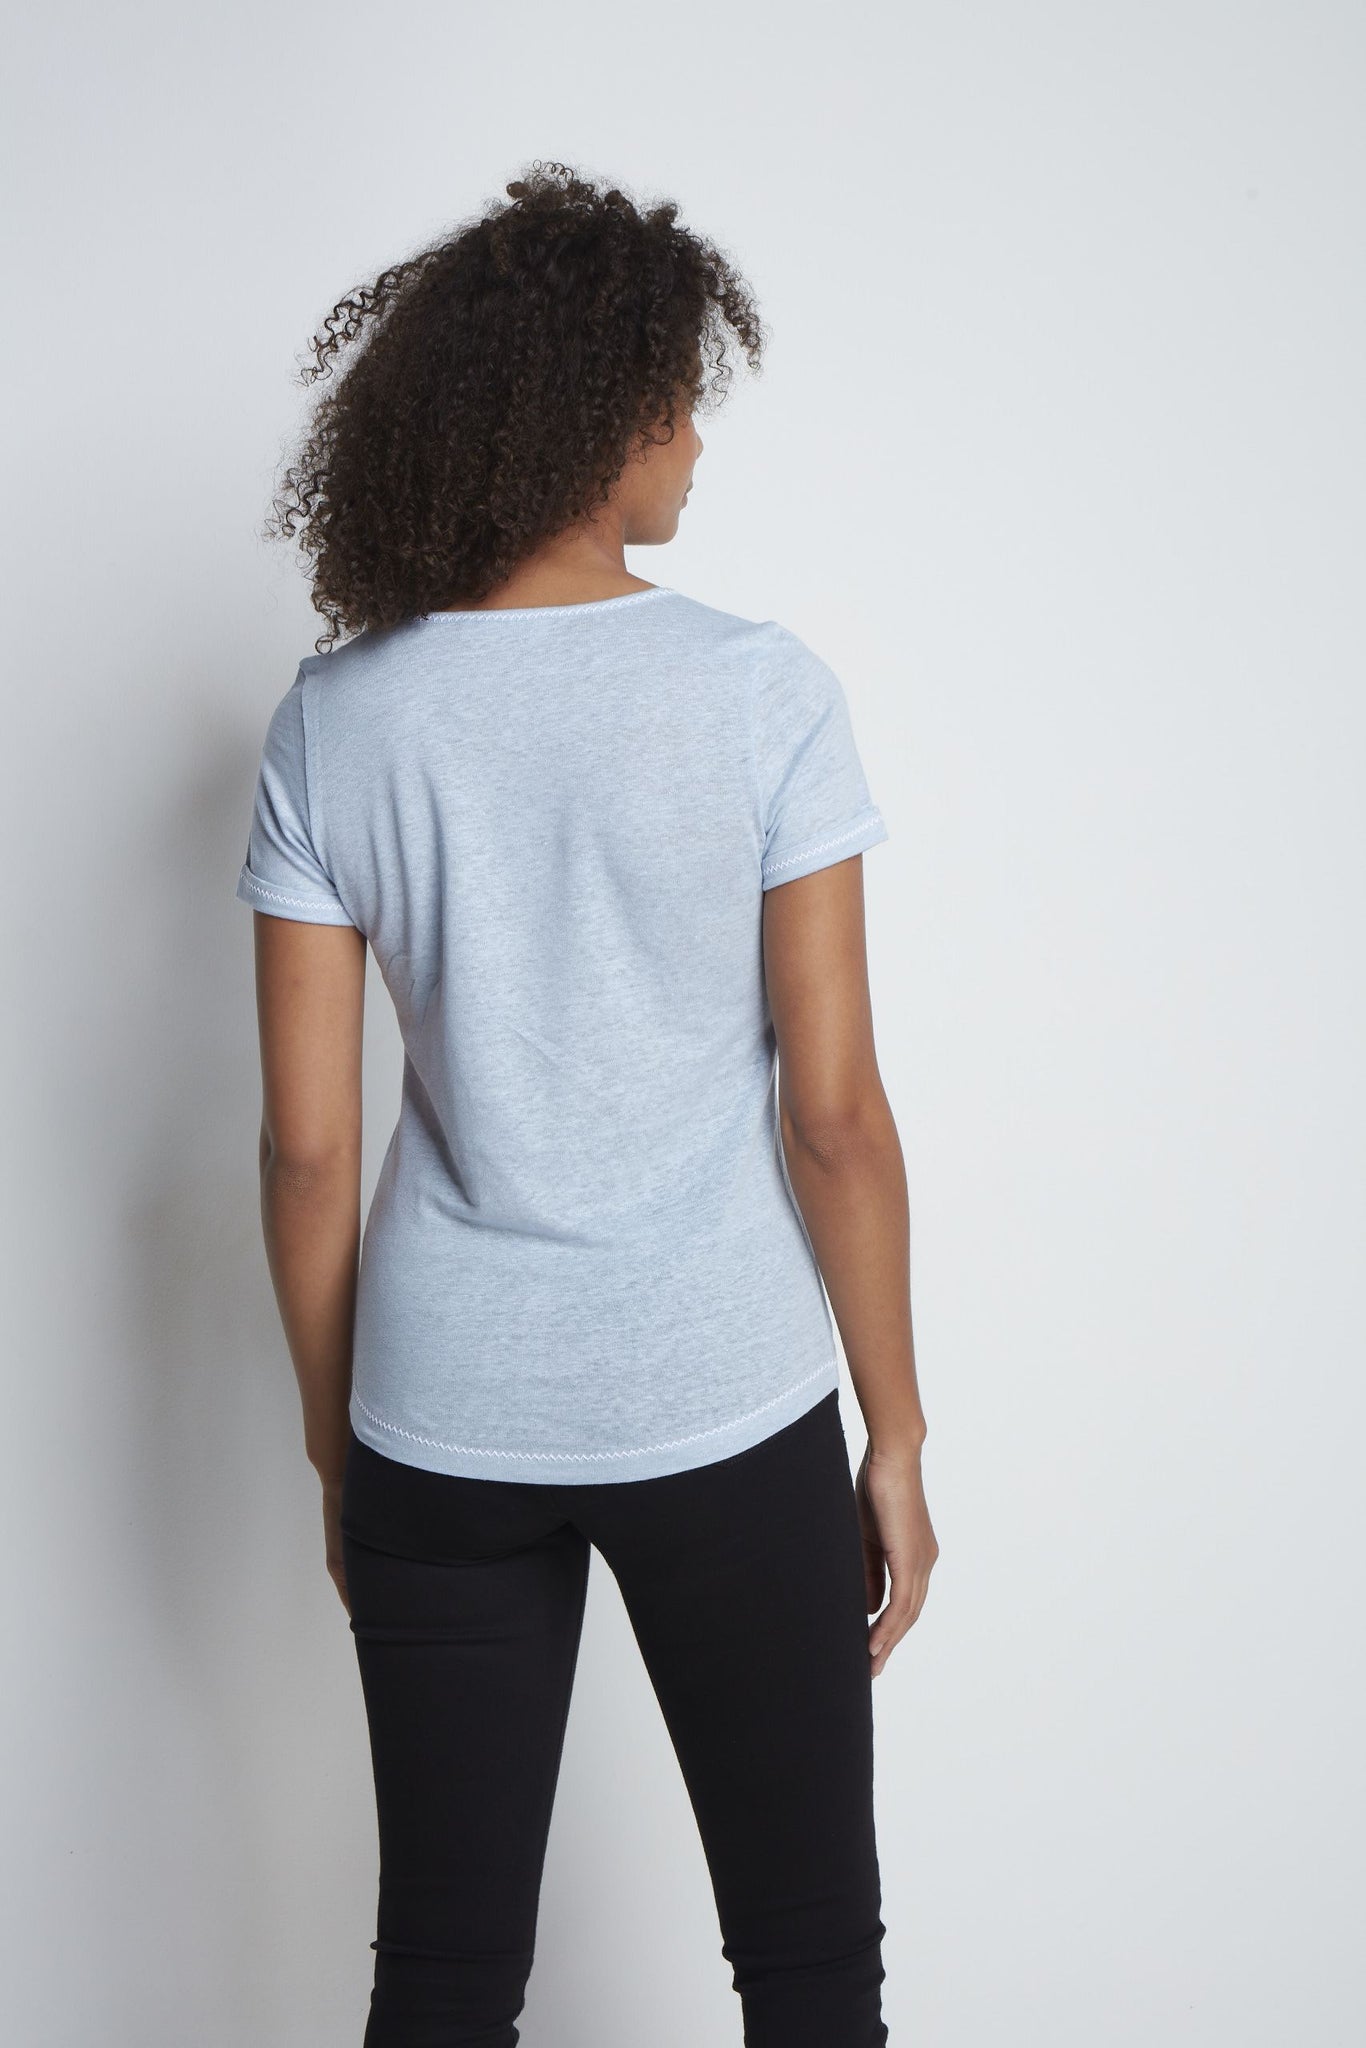 Light Weight Short Sleeve Linen T-Shirt - High Quality Linen T-Shirt - Flattering Short Sleeve T-Shirt - Blue Linen T-Shirt